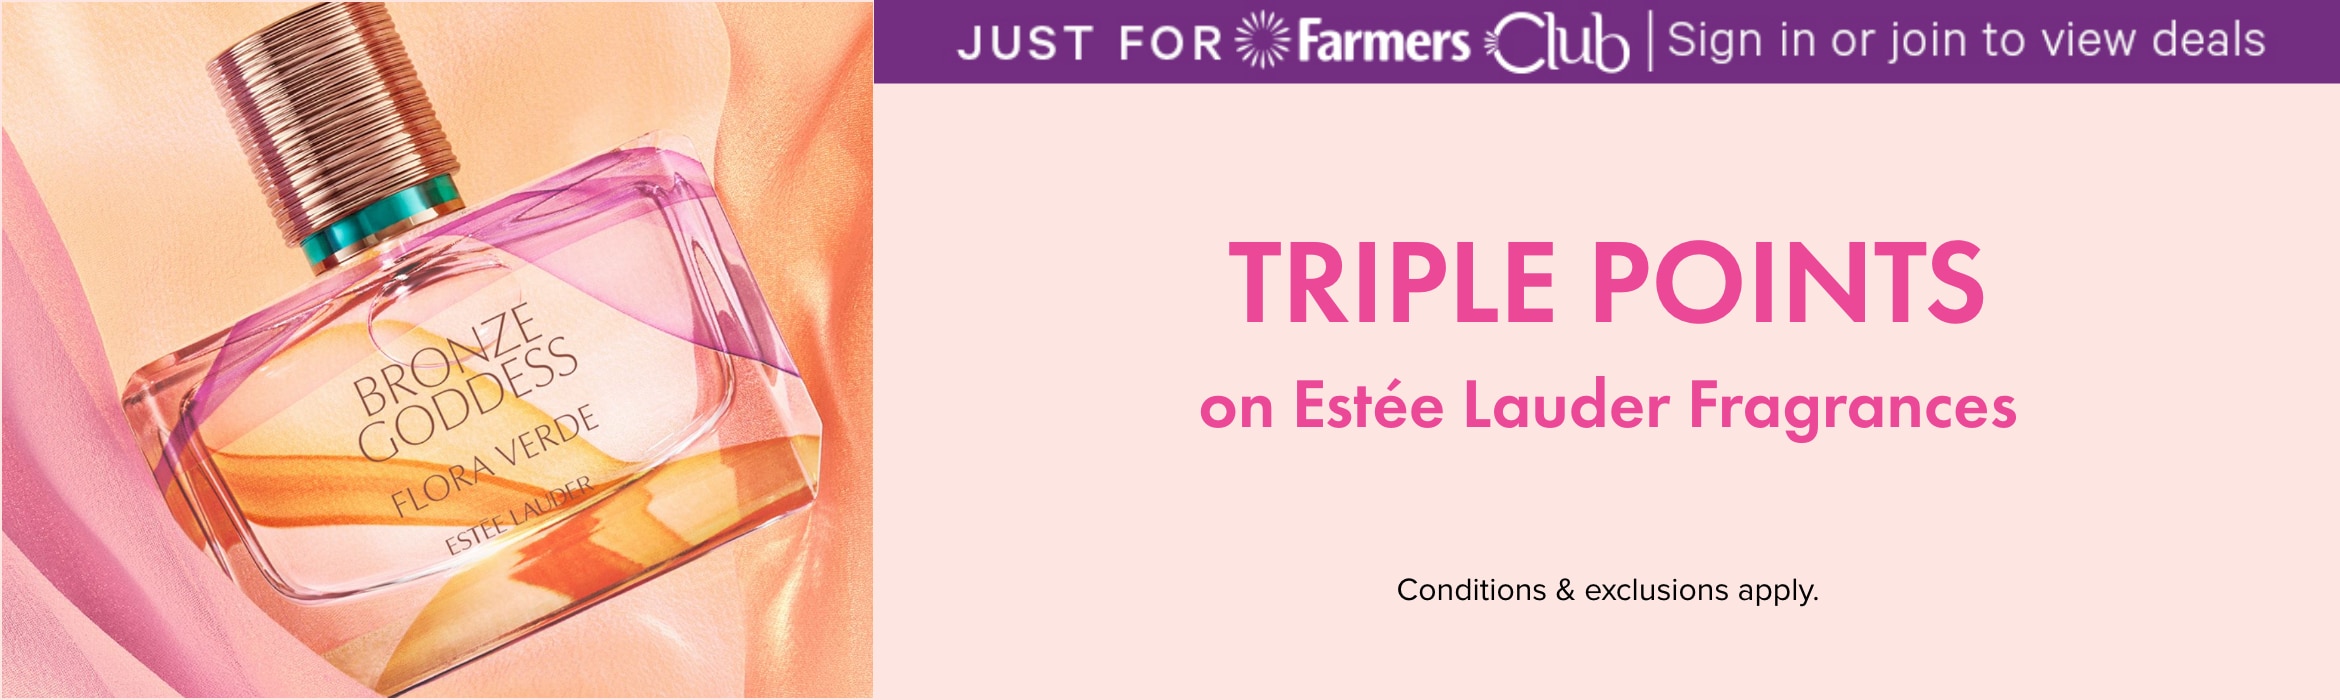 TRIPLE POINTS on Estee Lauder